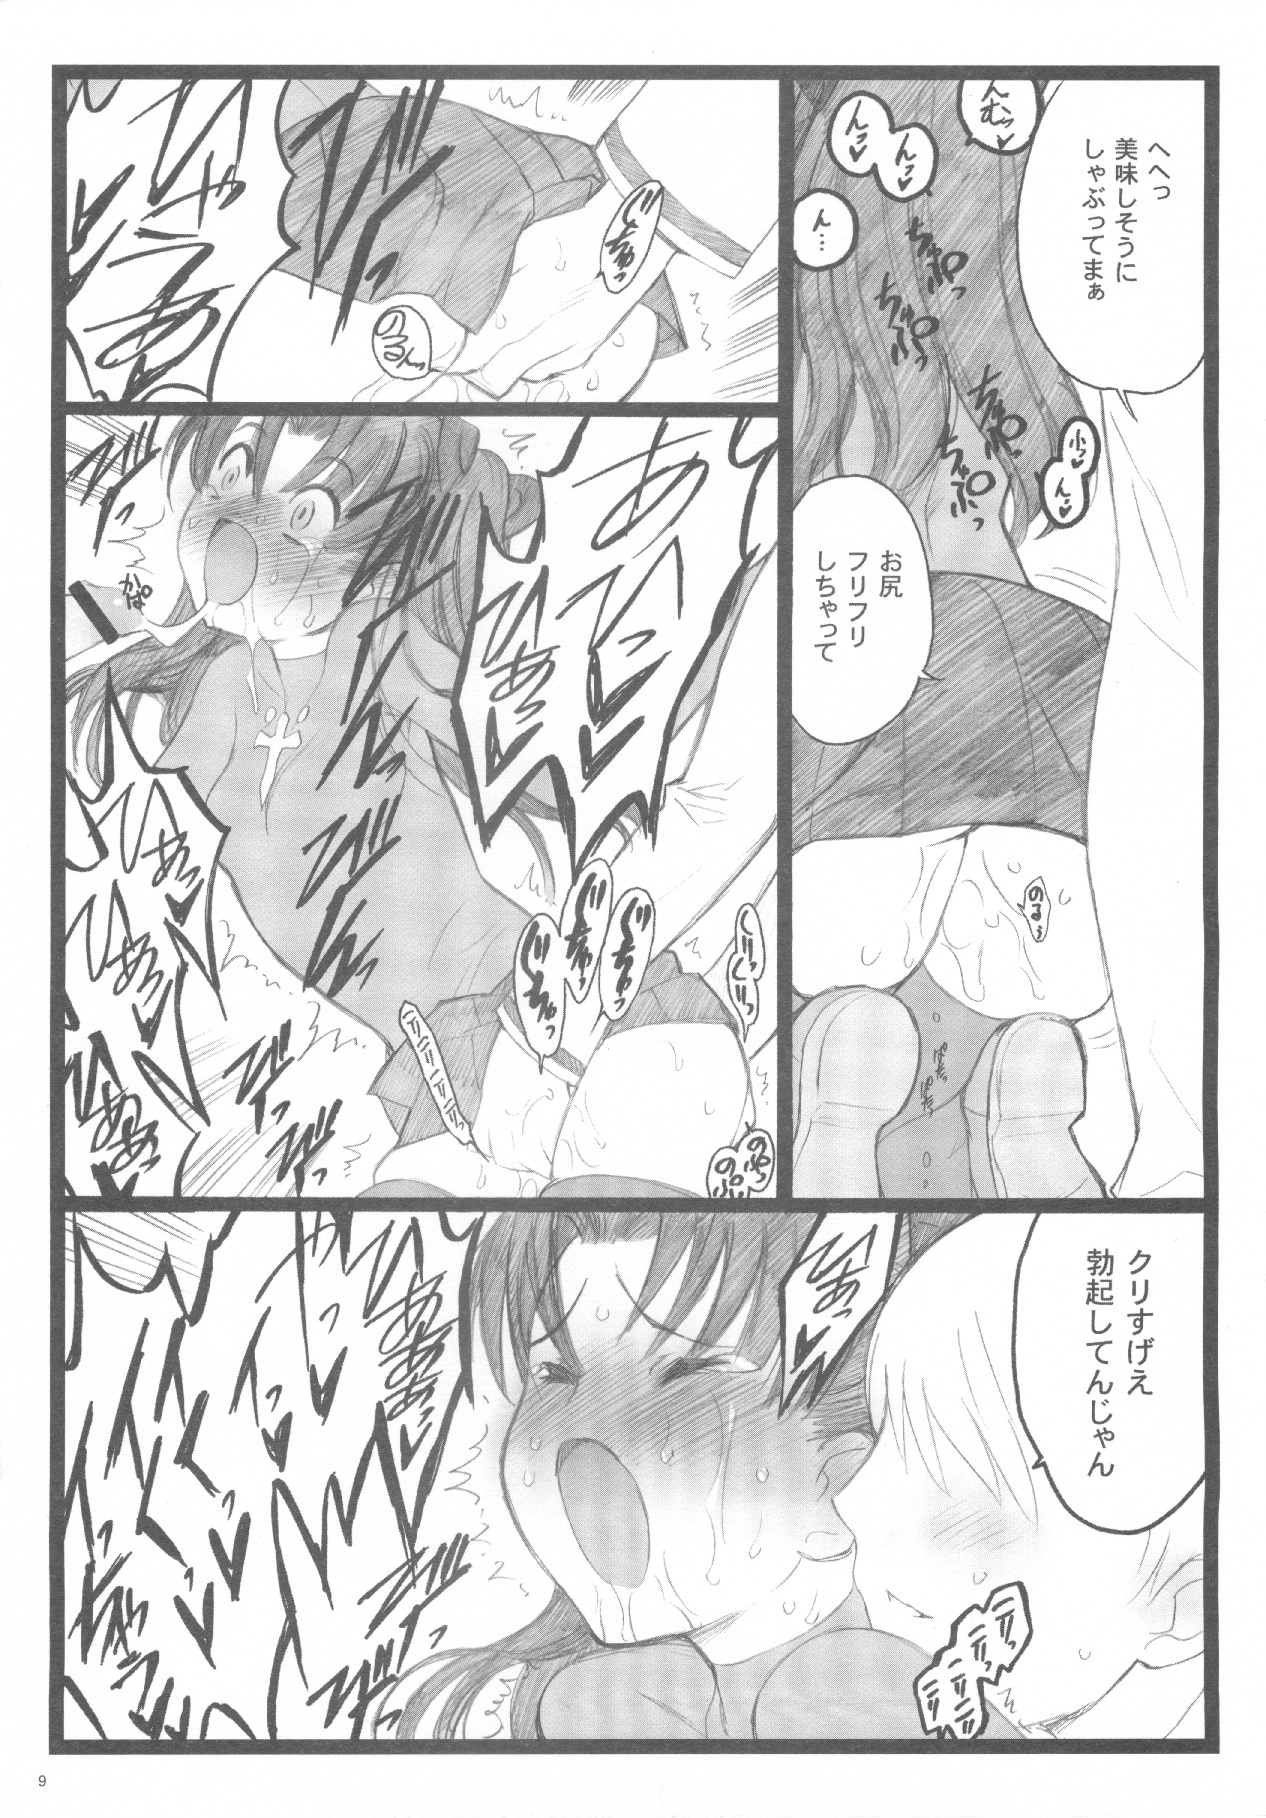 (C71) [Keumaya (Inoue Junichi)] Walpurugisnacht 3 / Walpurgis no Yoru 3 (Fate/stay night) page 8 full